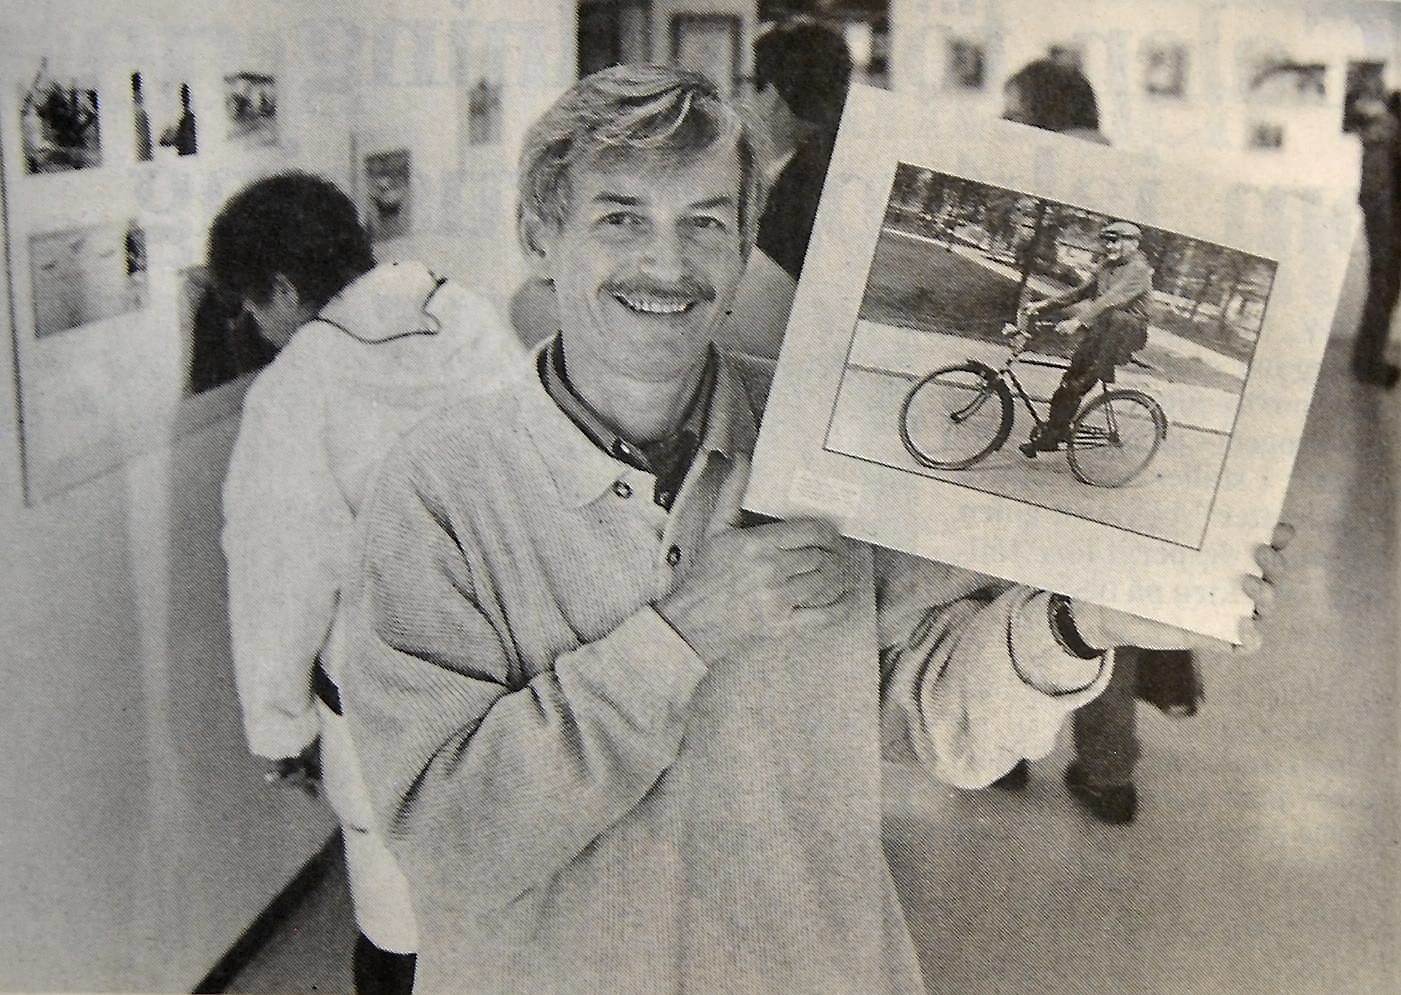 Mats Jeppsson med en bild av Oscar ”morfar” Ohlsson, som var känd långfärdscyklist och vinterbadare.
Arkiv: Helene Nordgren